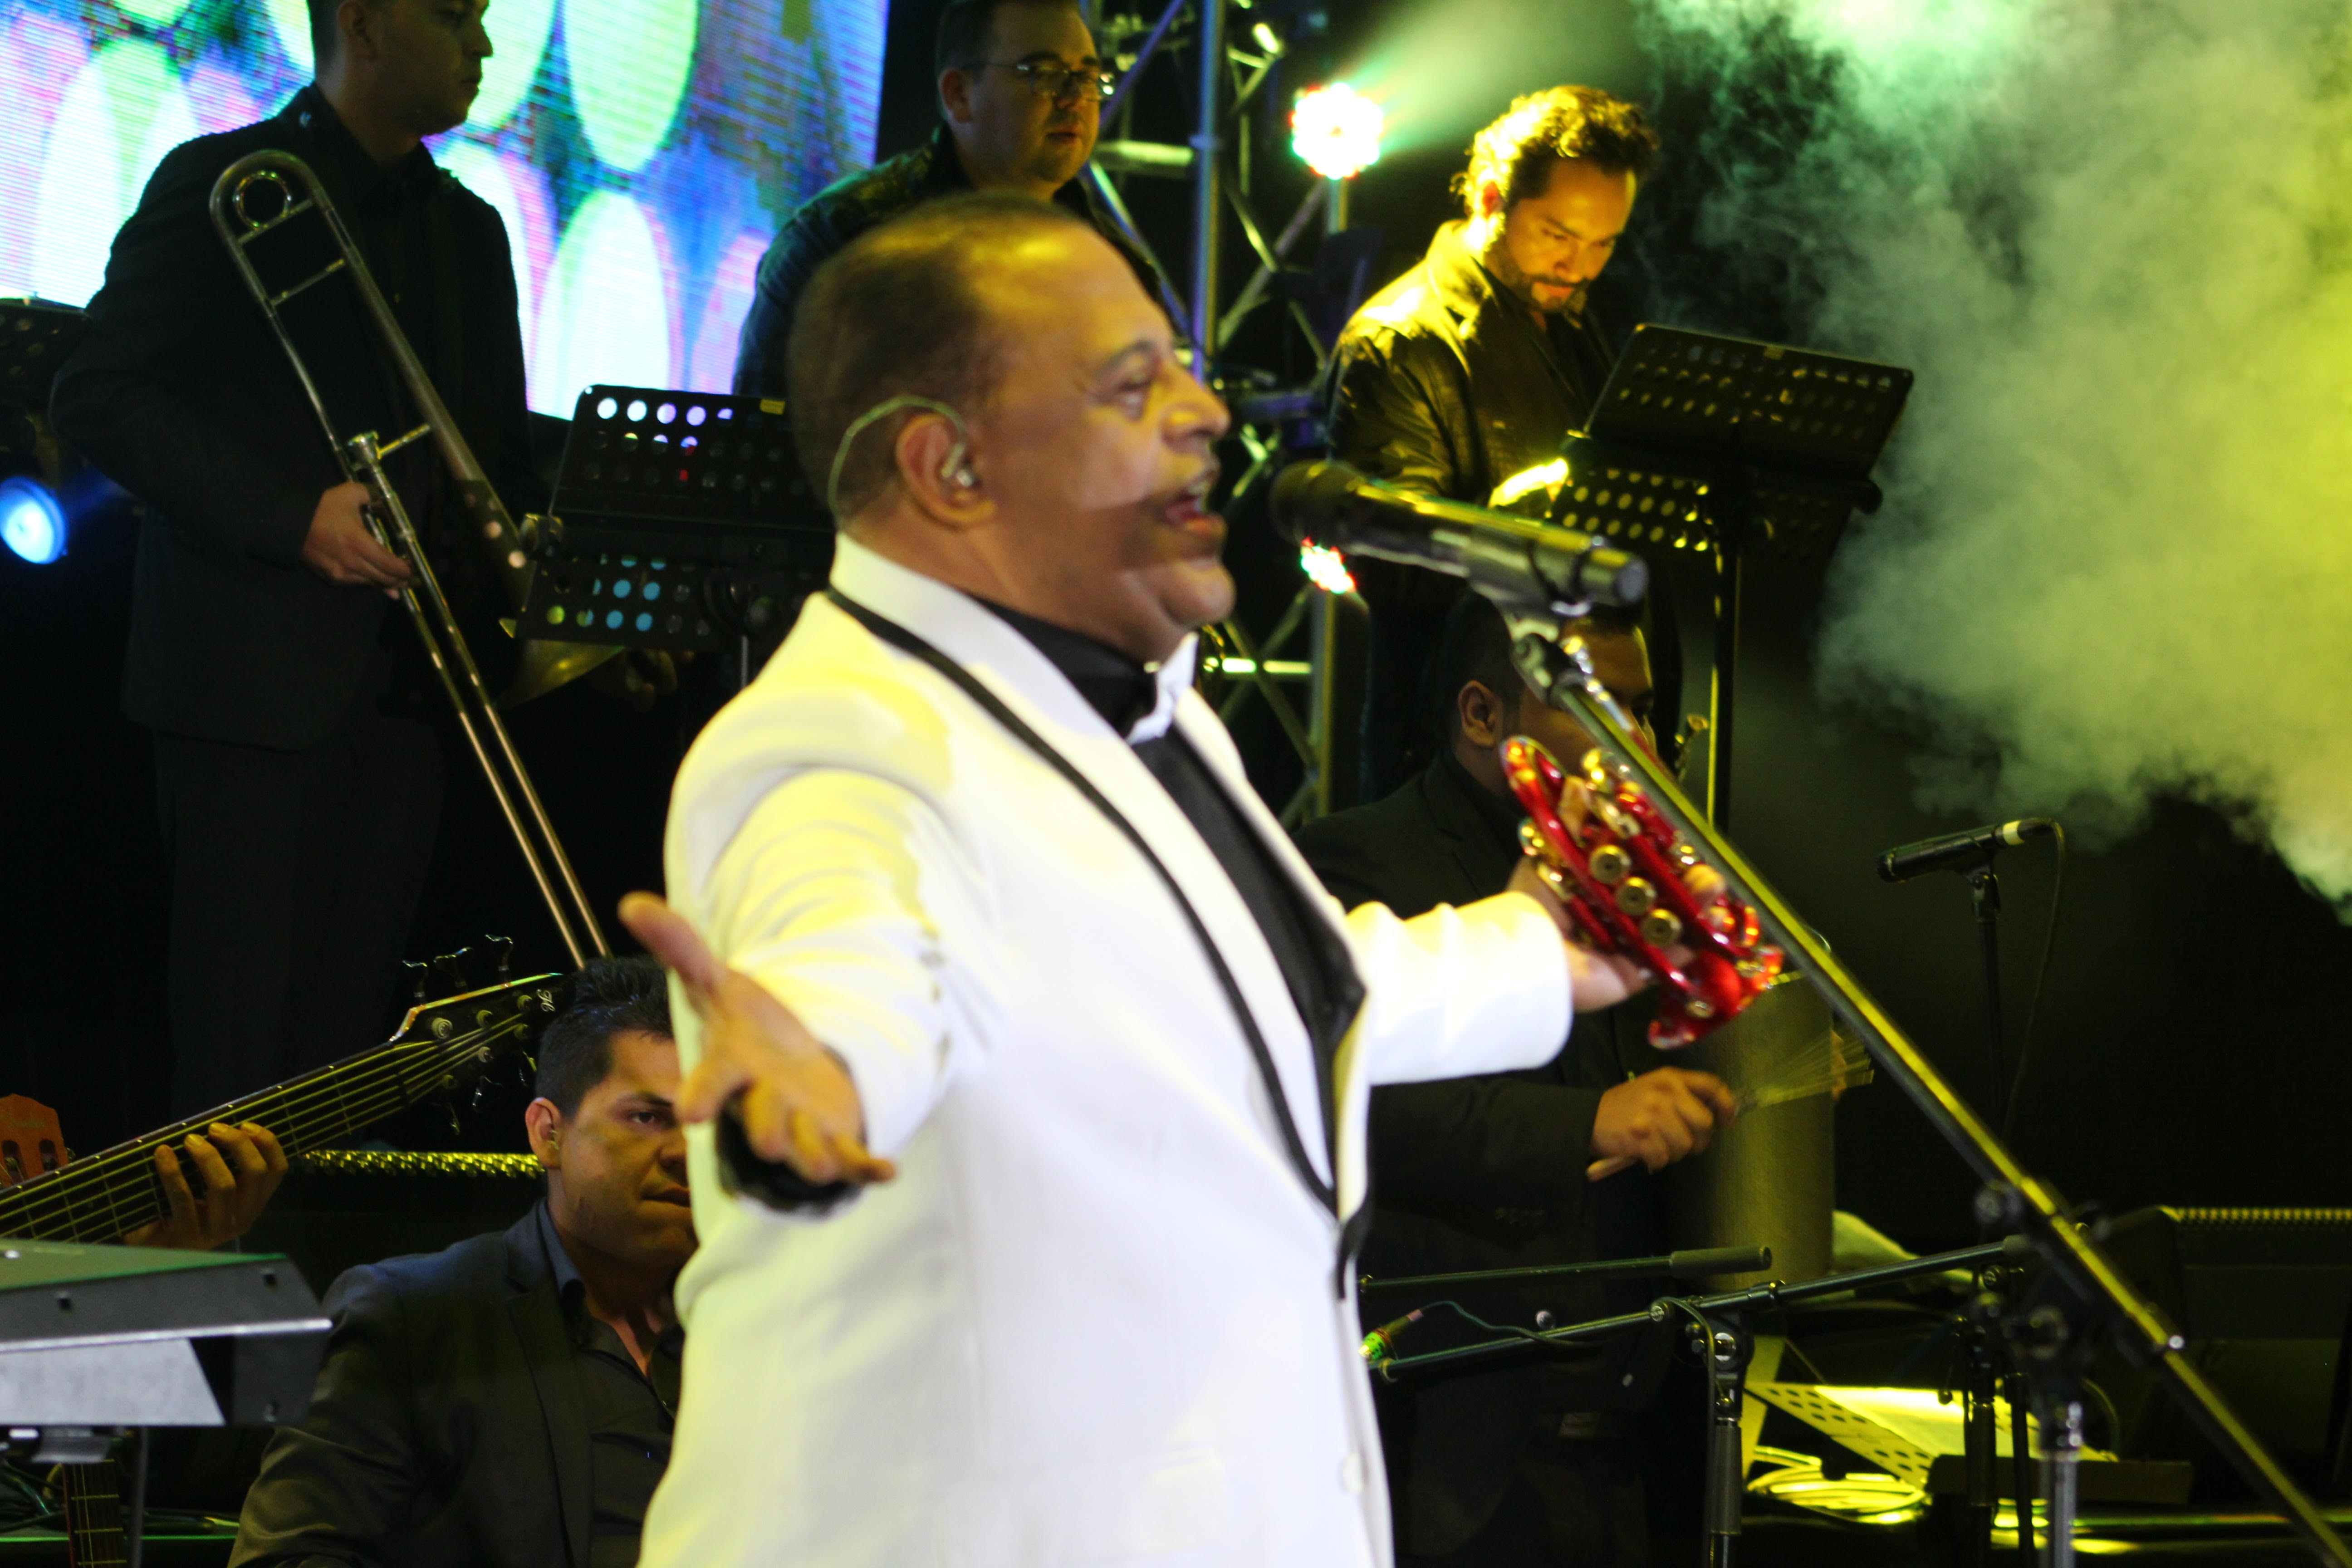 Músico puertoplateño Wilfrido Vargas siguen cosechando éxitos en Colombia; pone a bailar merengue a miles de personas en festival de Bogotá